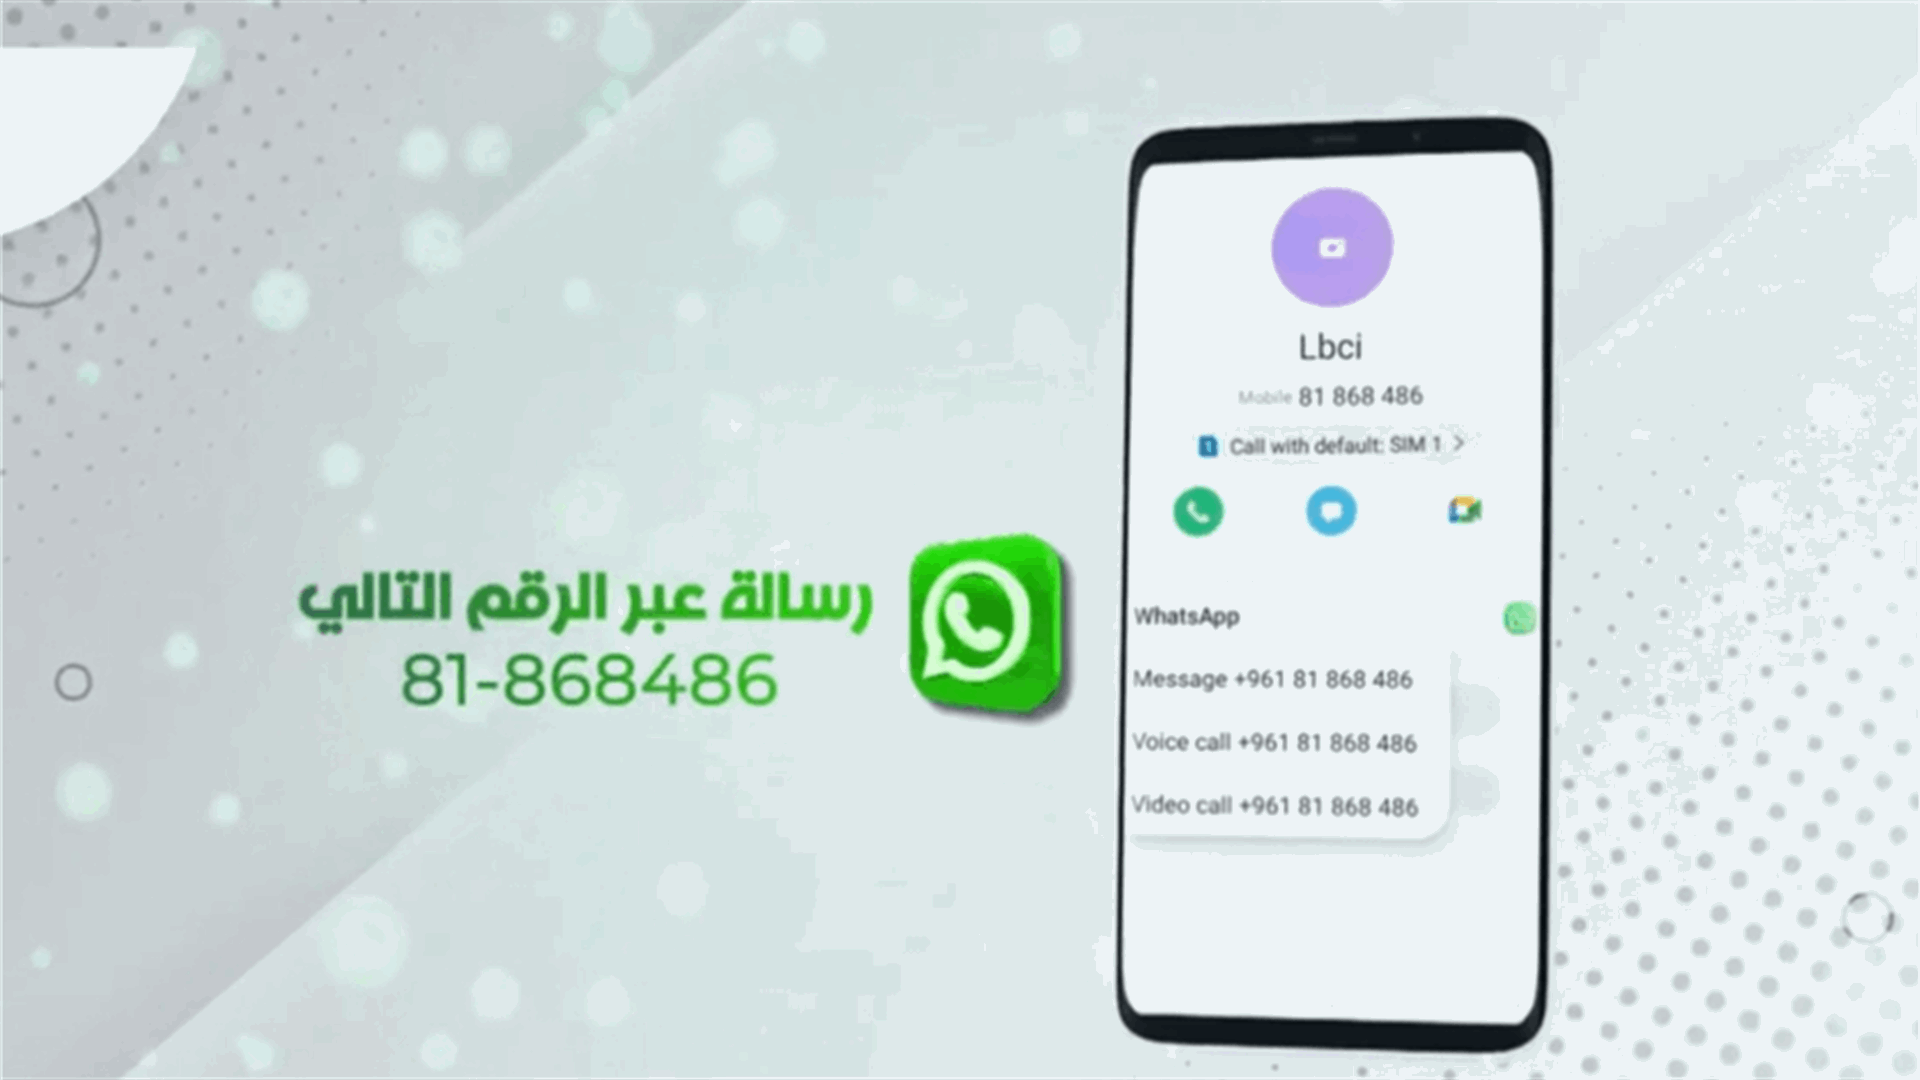 LBCI is now on WhatsApp…